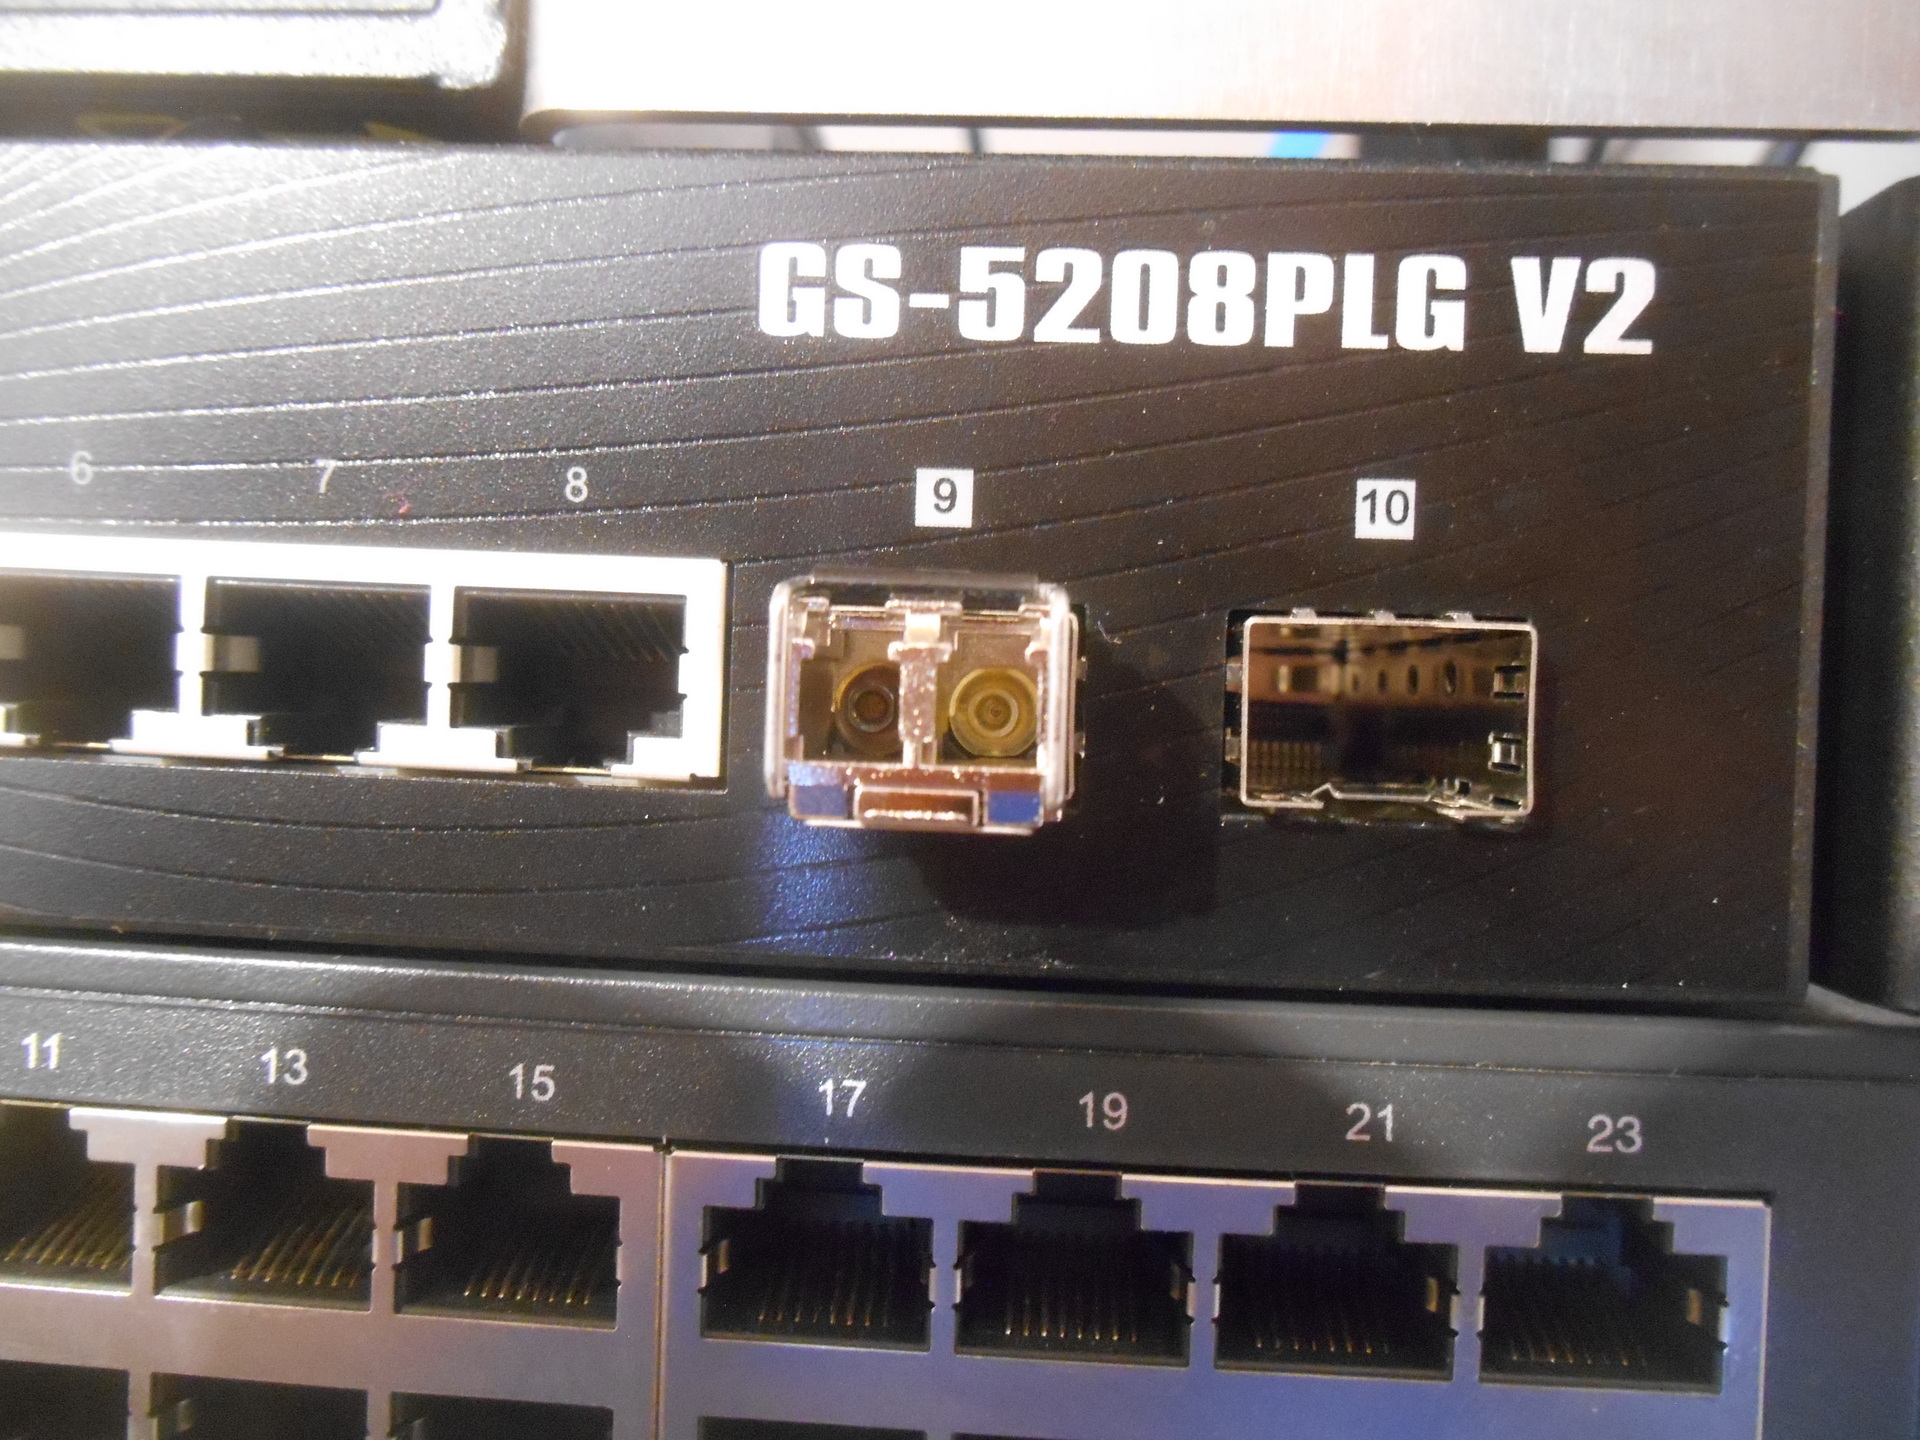 Netzwerk-Switch mit 2 SFP-Schächten. Der linke Schacht ist belegt, der rechte frei.